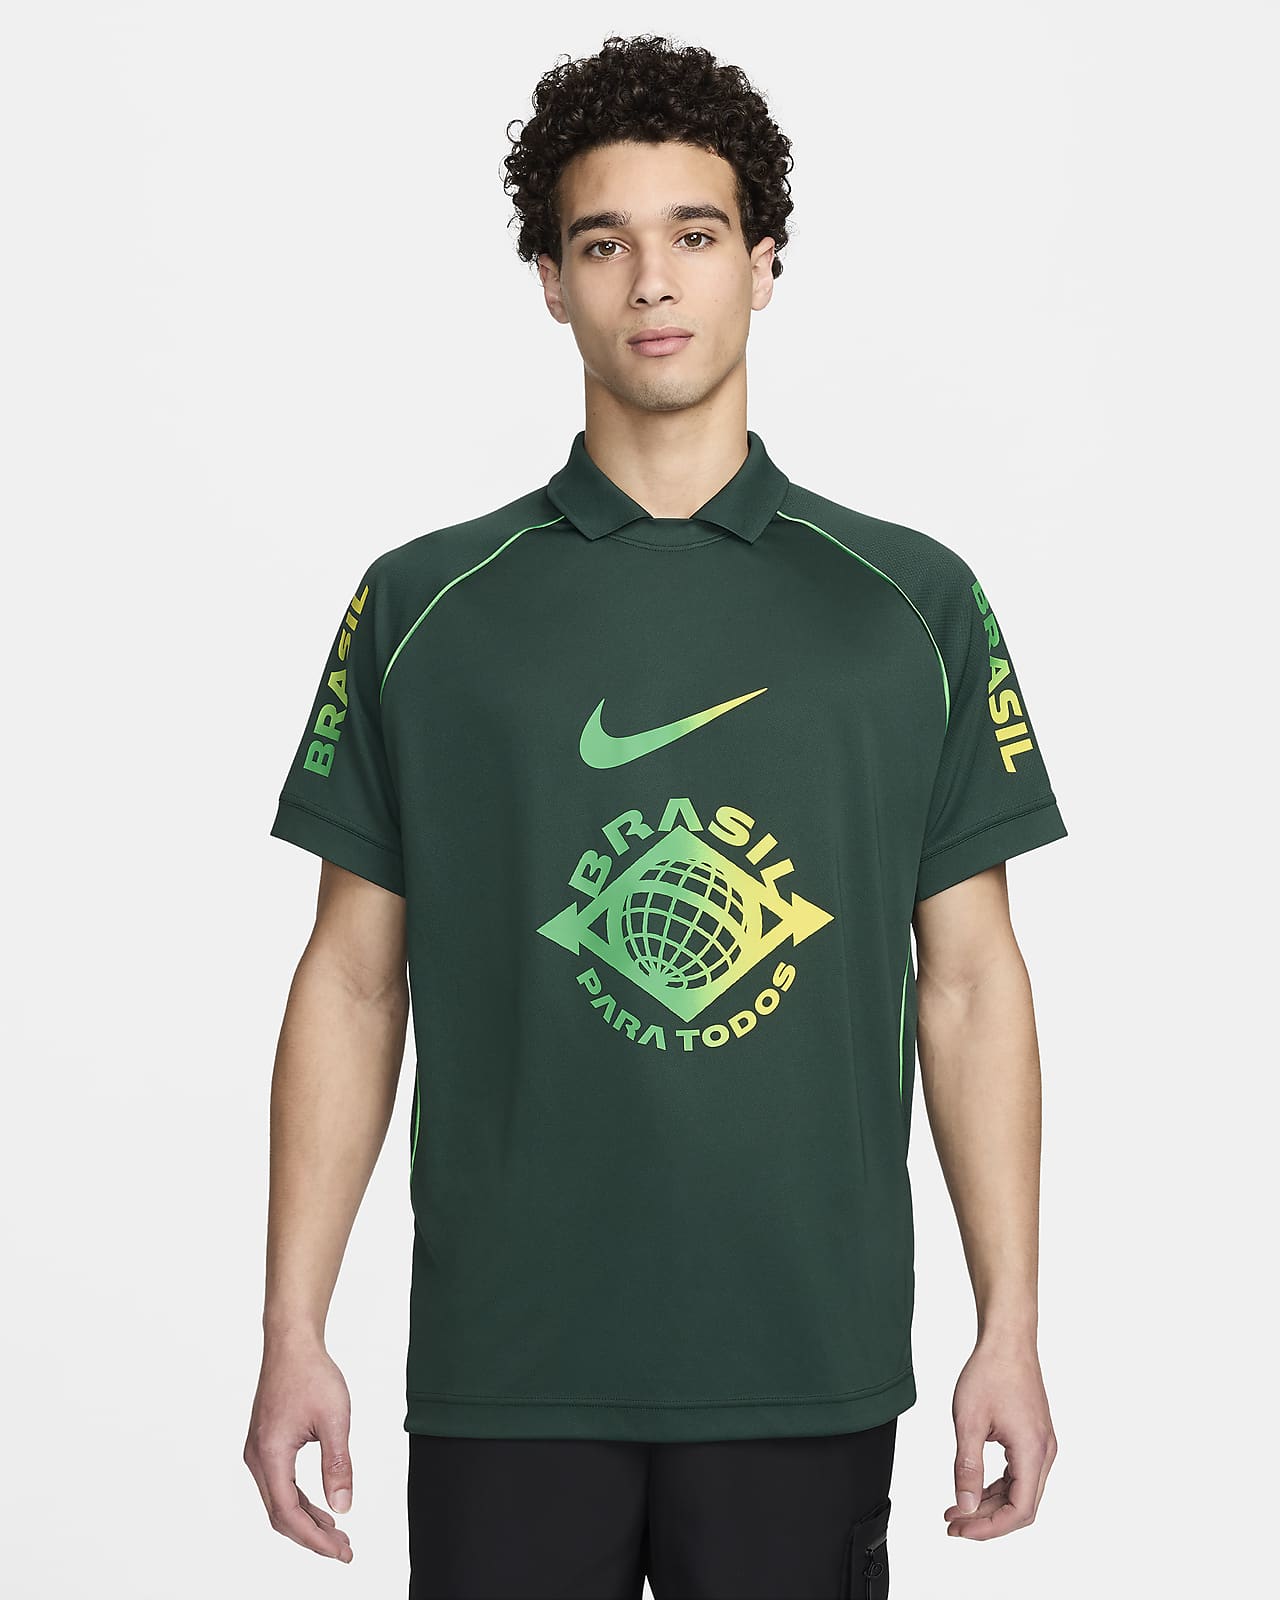 ブラジル メンズ ナイキ Dri-FIT サッカーユニフォーム